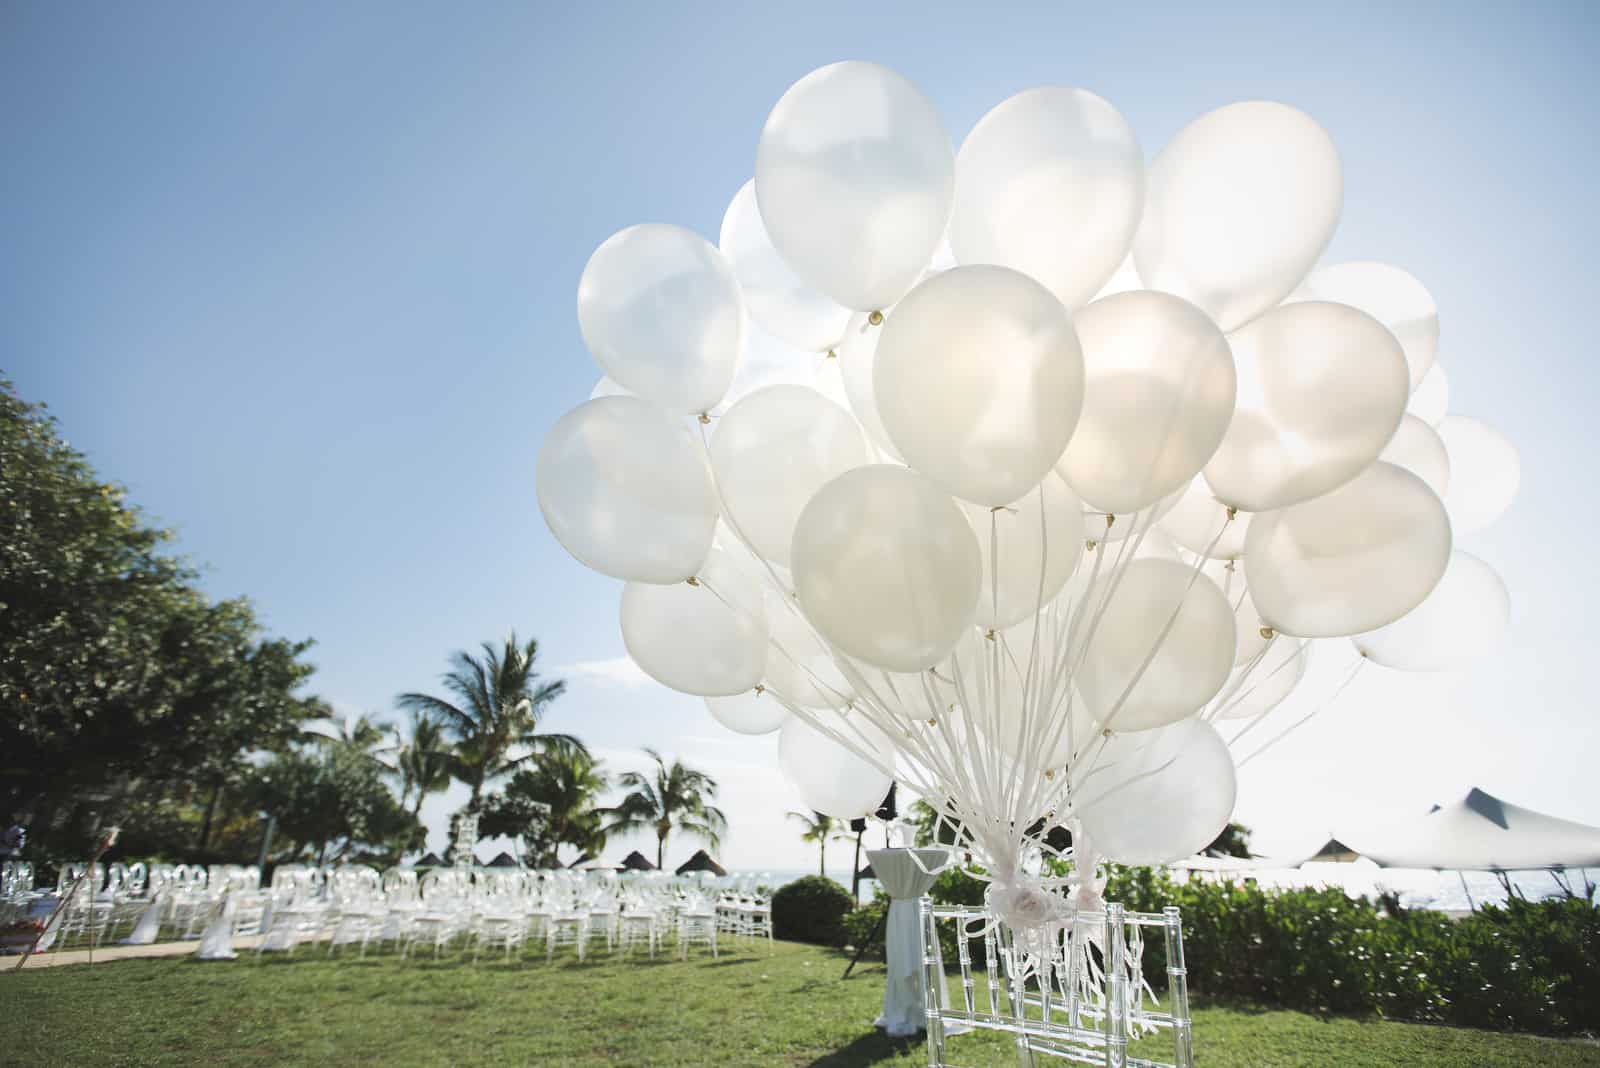 Romantische Hochzeitszeremonie am Strand mit vielen weißen Luftballons